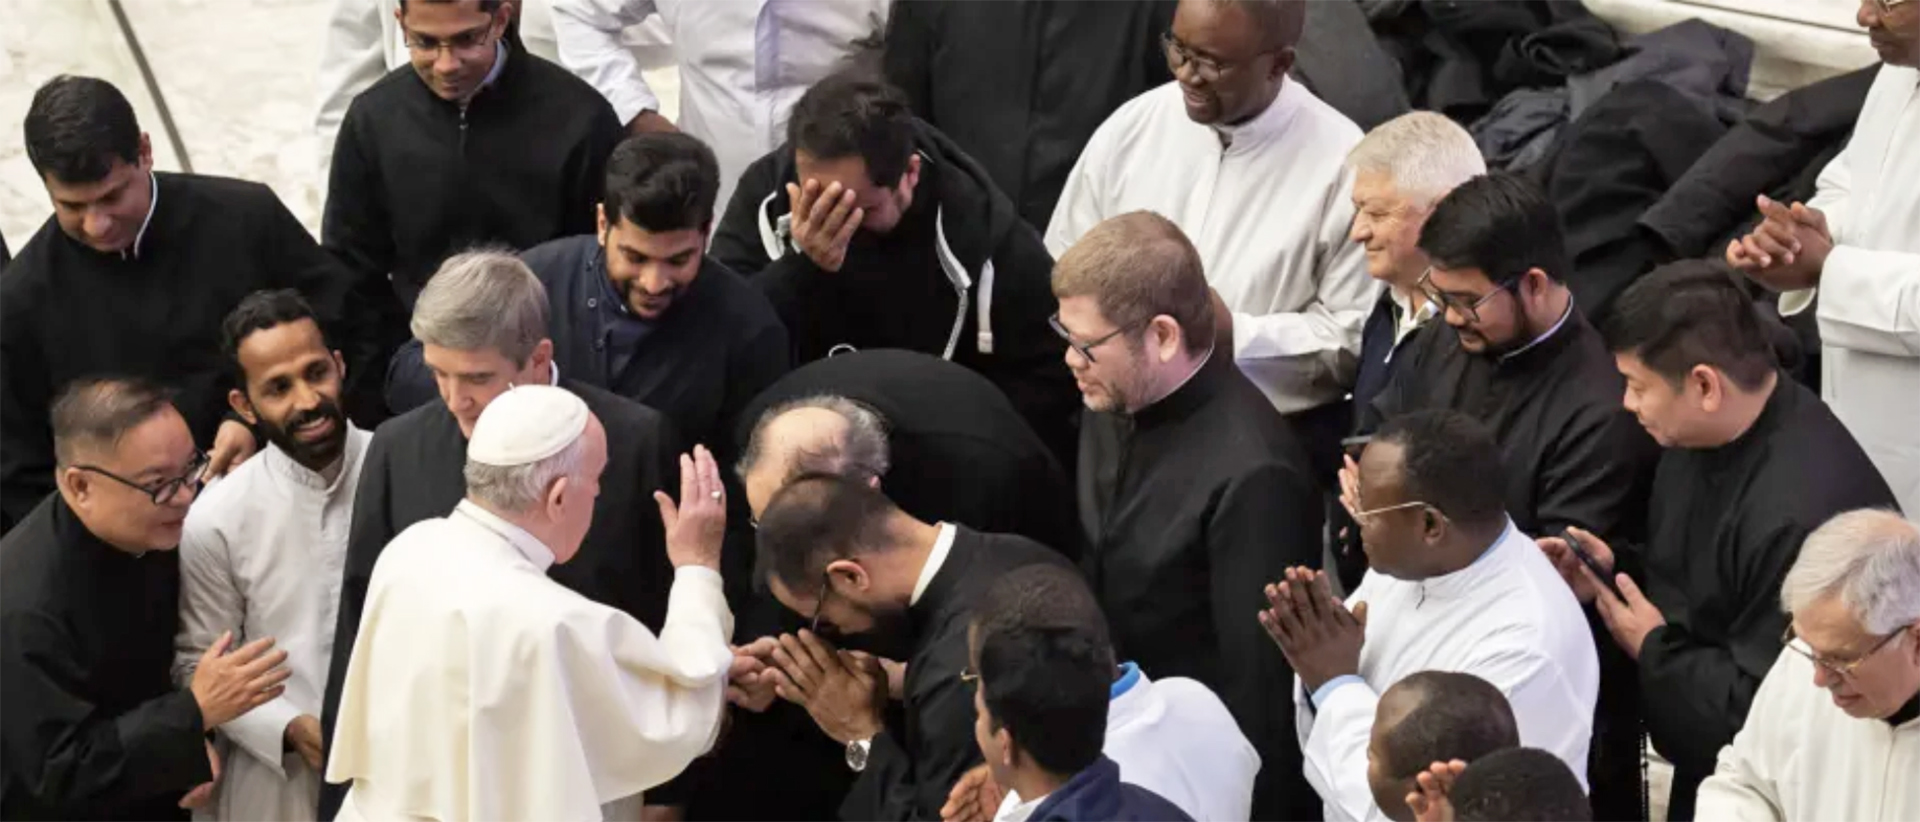 Le pape François bénissant des séminaristes lors d'une audience à Rome | ©️ Antoine.Mekary | I.MEDIA